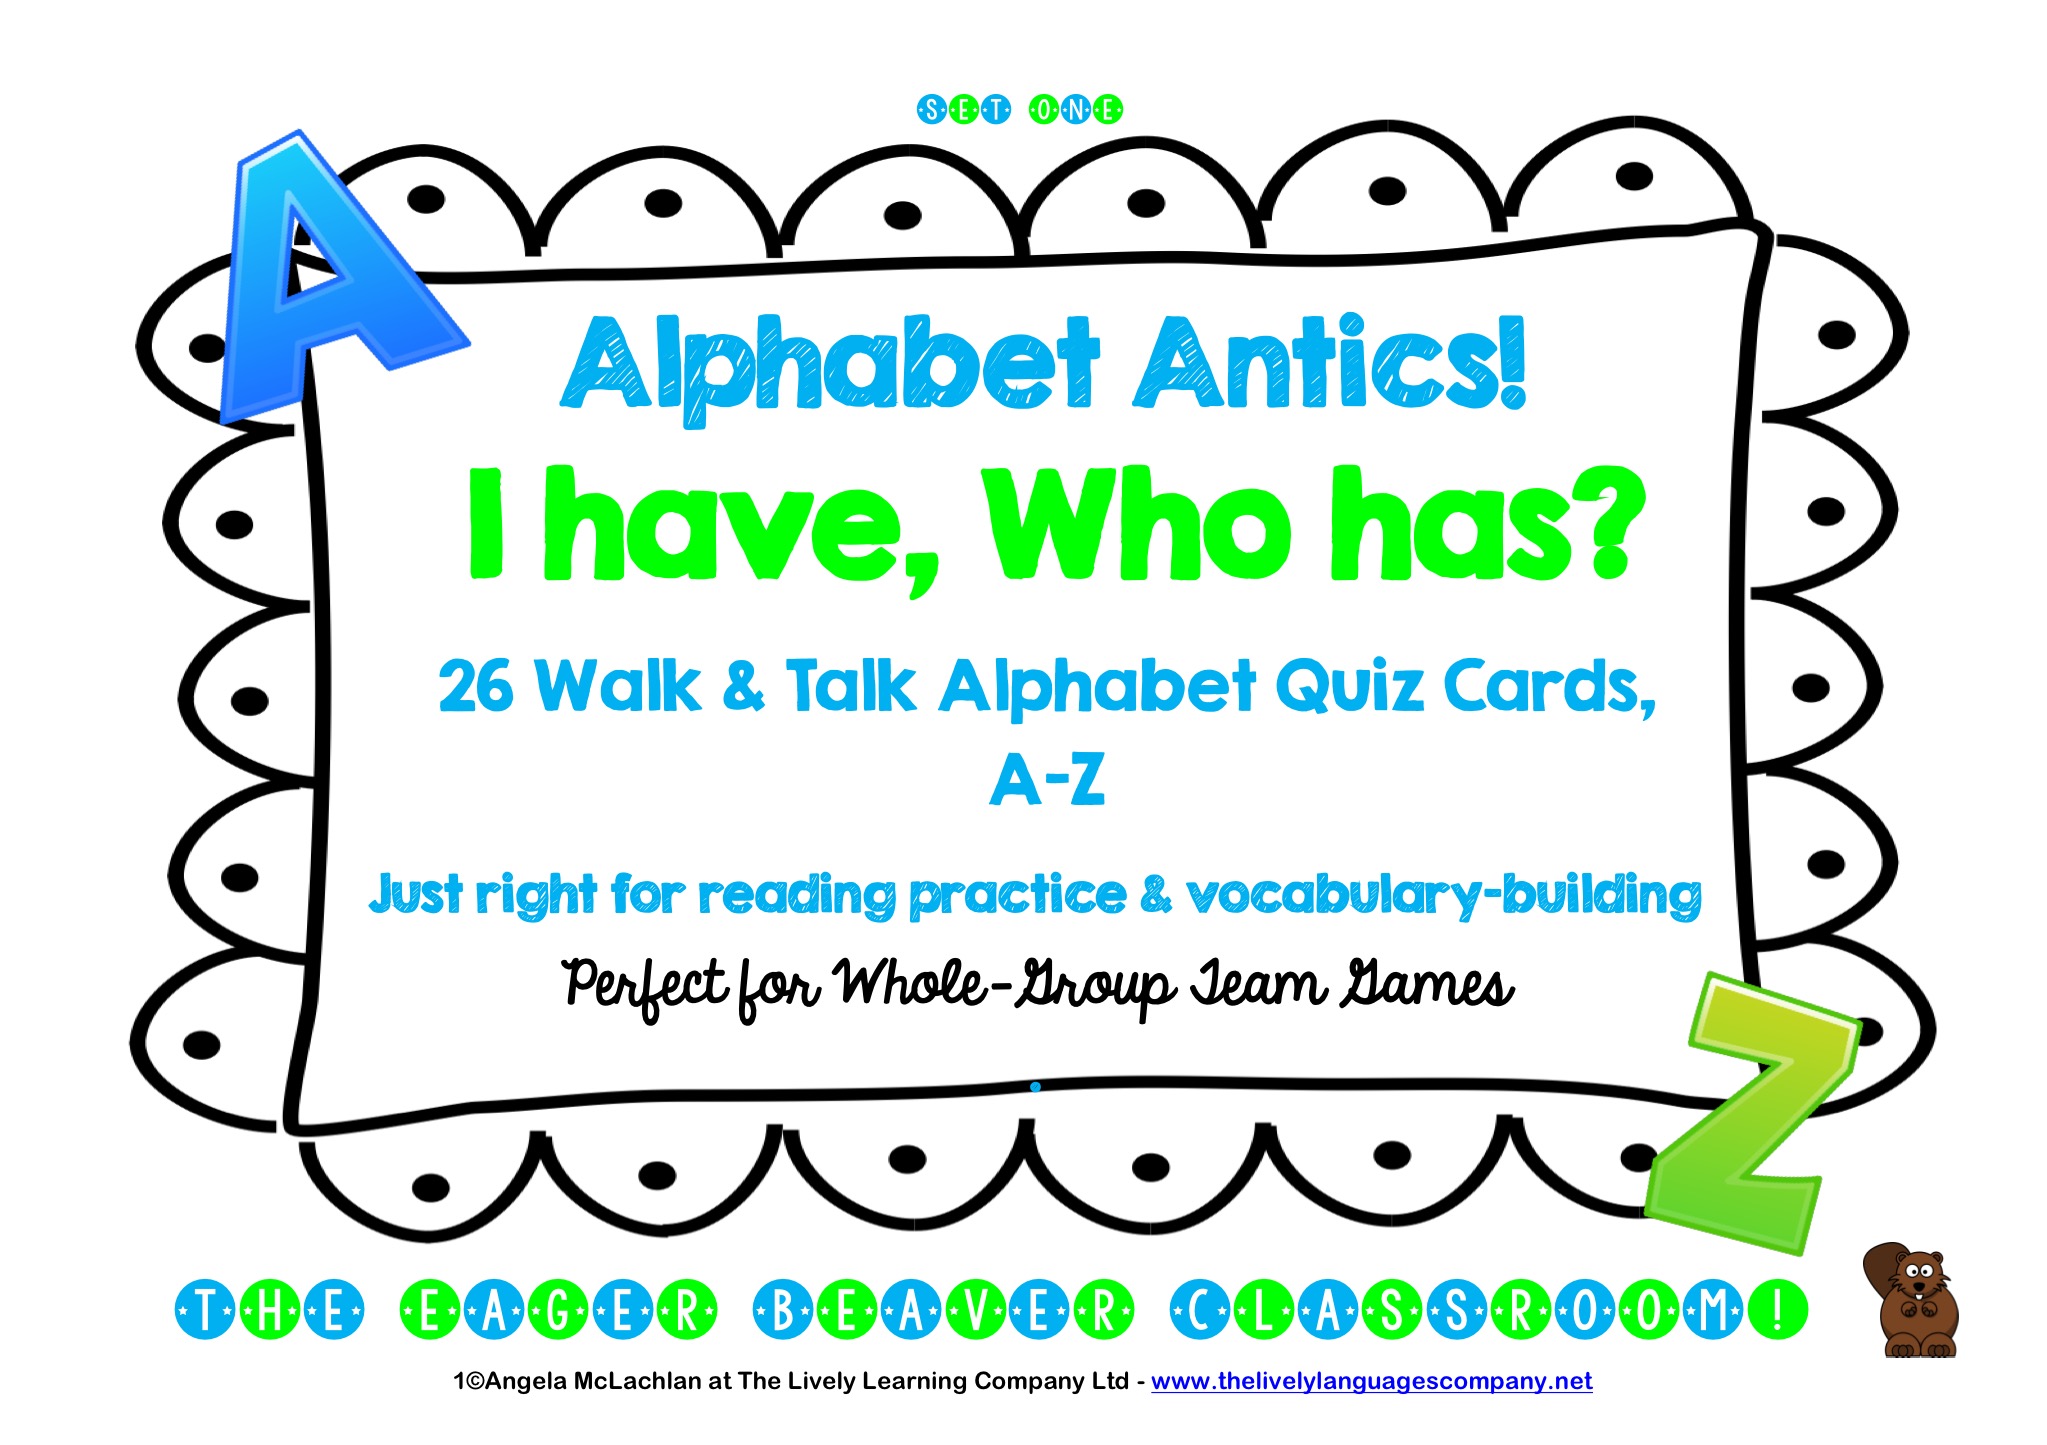 Alphabet Antics! I have...Who has...? 26 Walk & Talk Cards